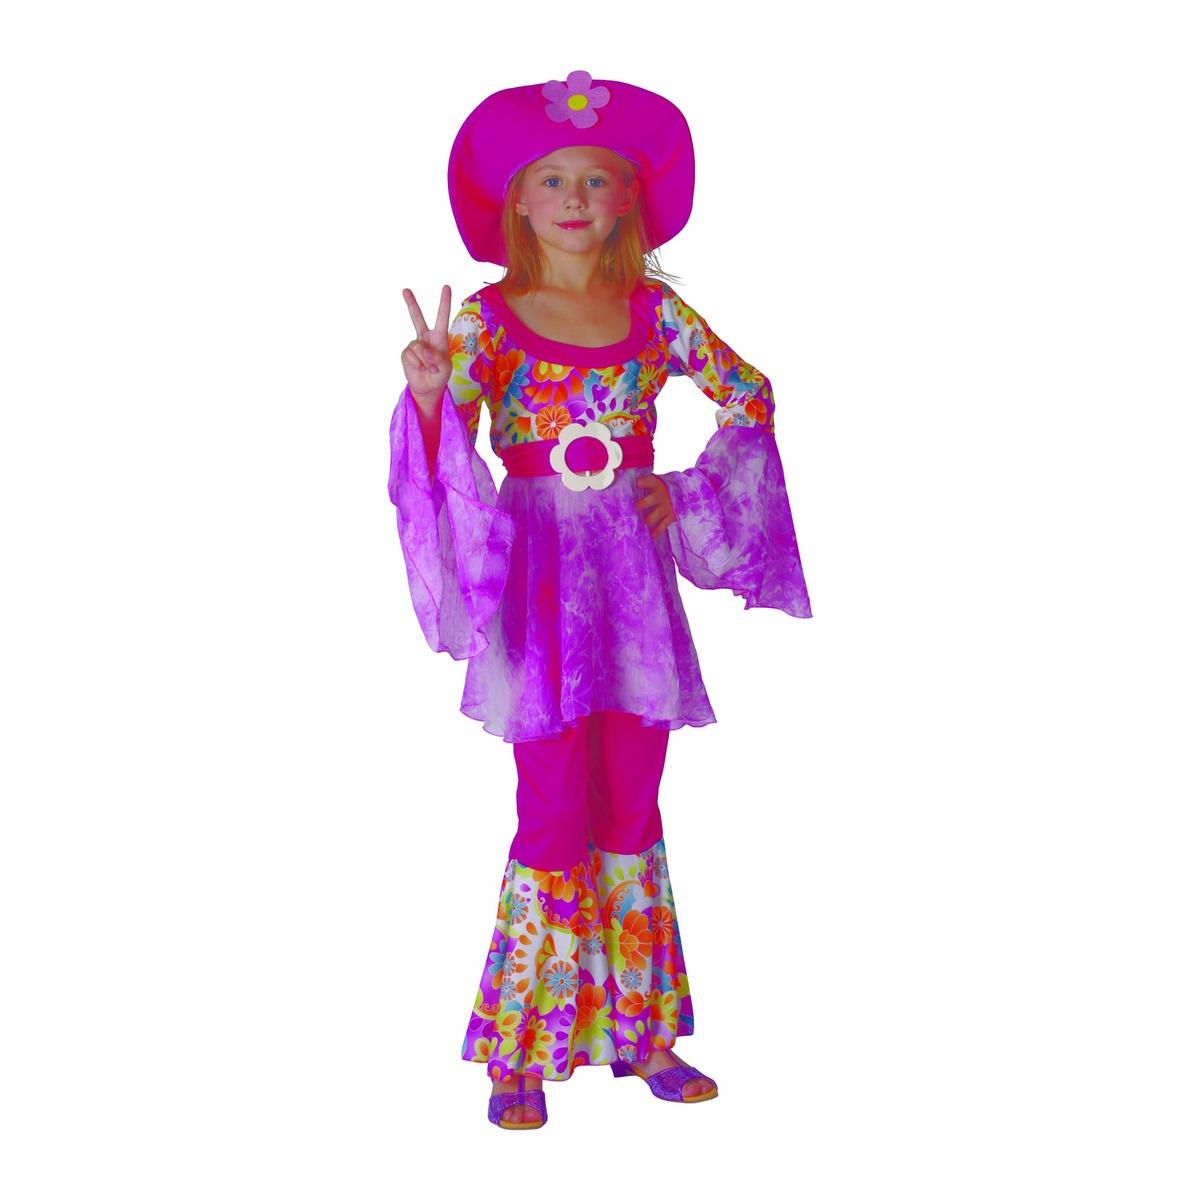 Déguisement enfant modèle Diva fleurie - Taille 4 à 12 ans - Multicolore